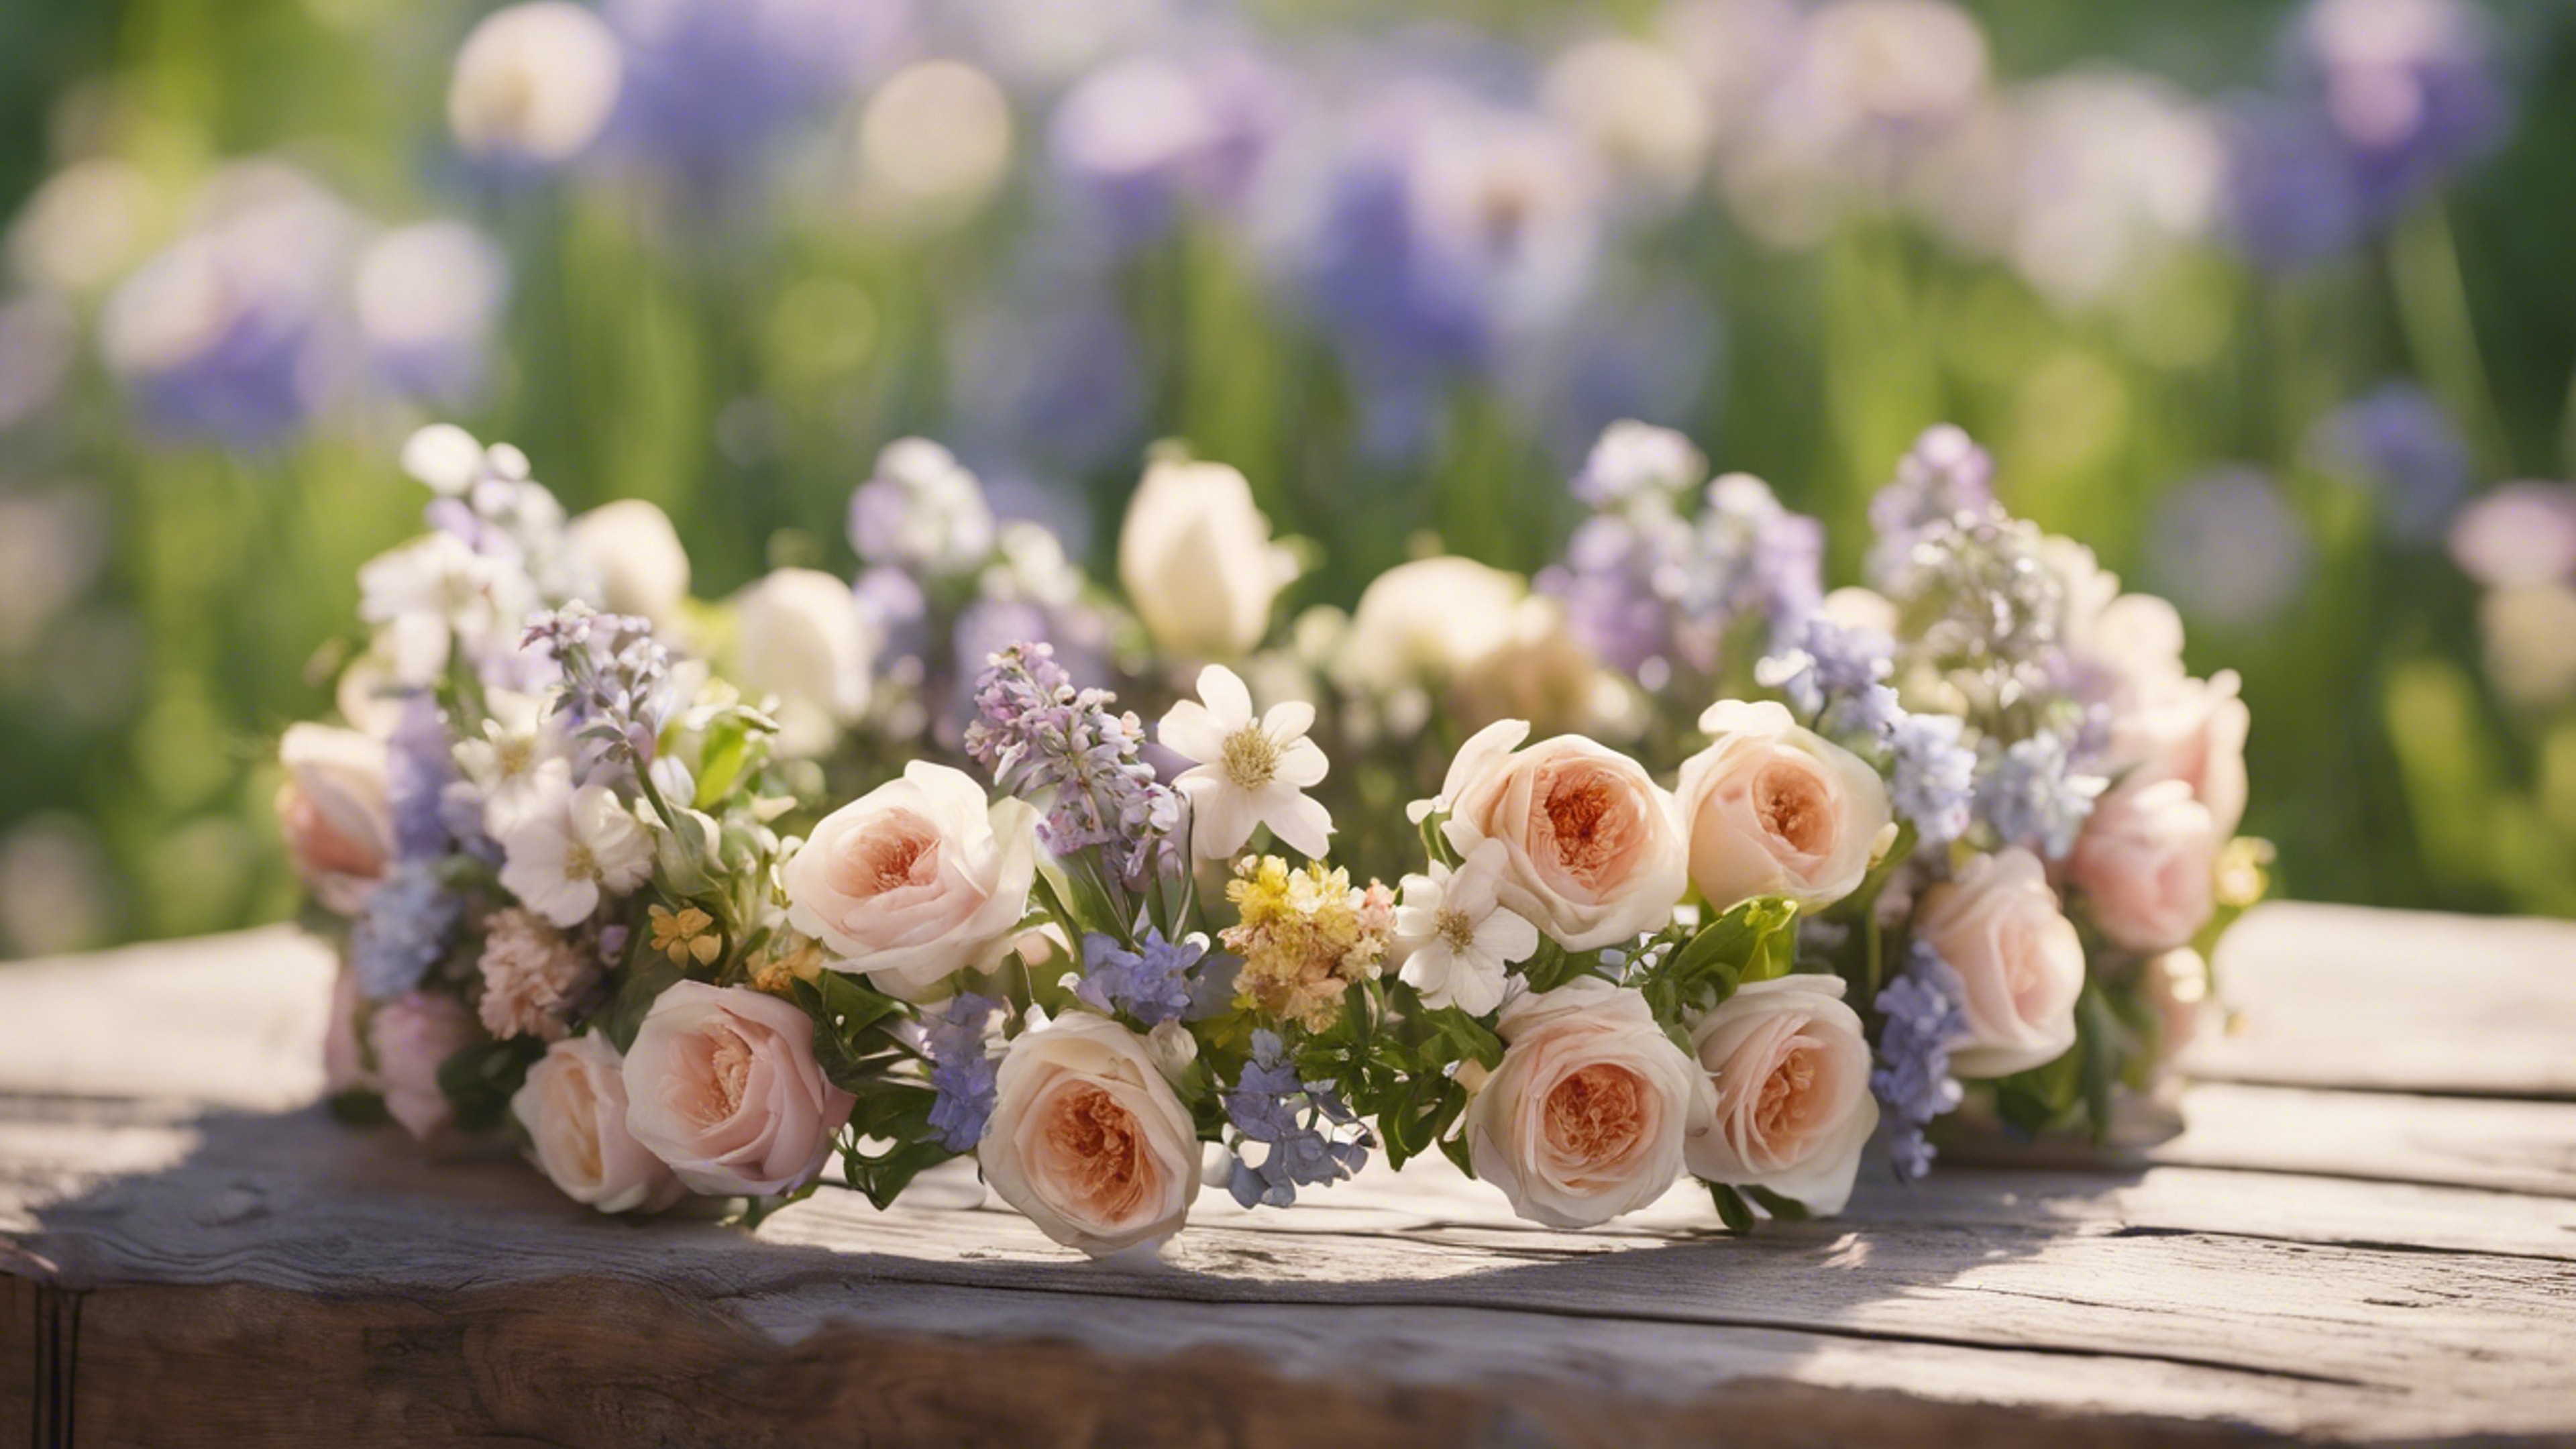 A crown made of fresh spring flowers on a wooden table outdoors. duvar kağıdı[d5115d6a32bf47389ae3]